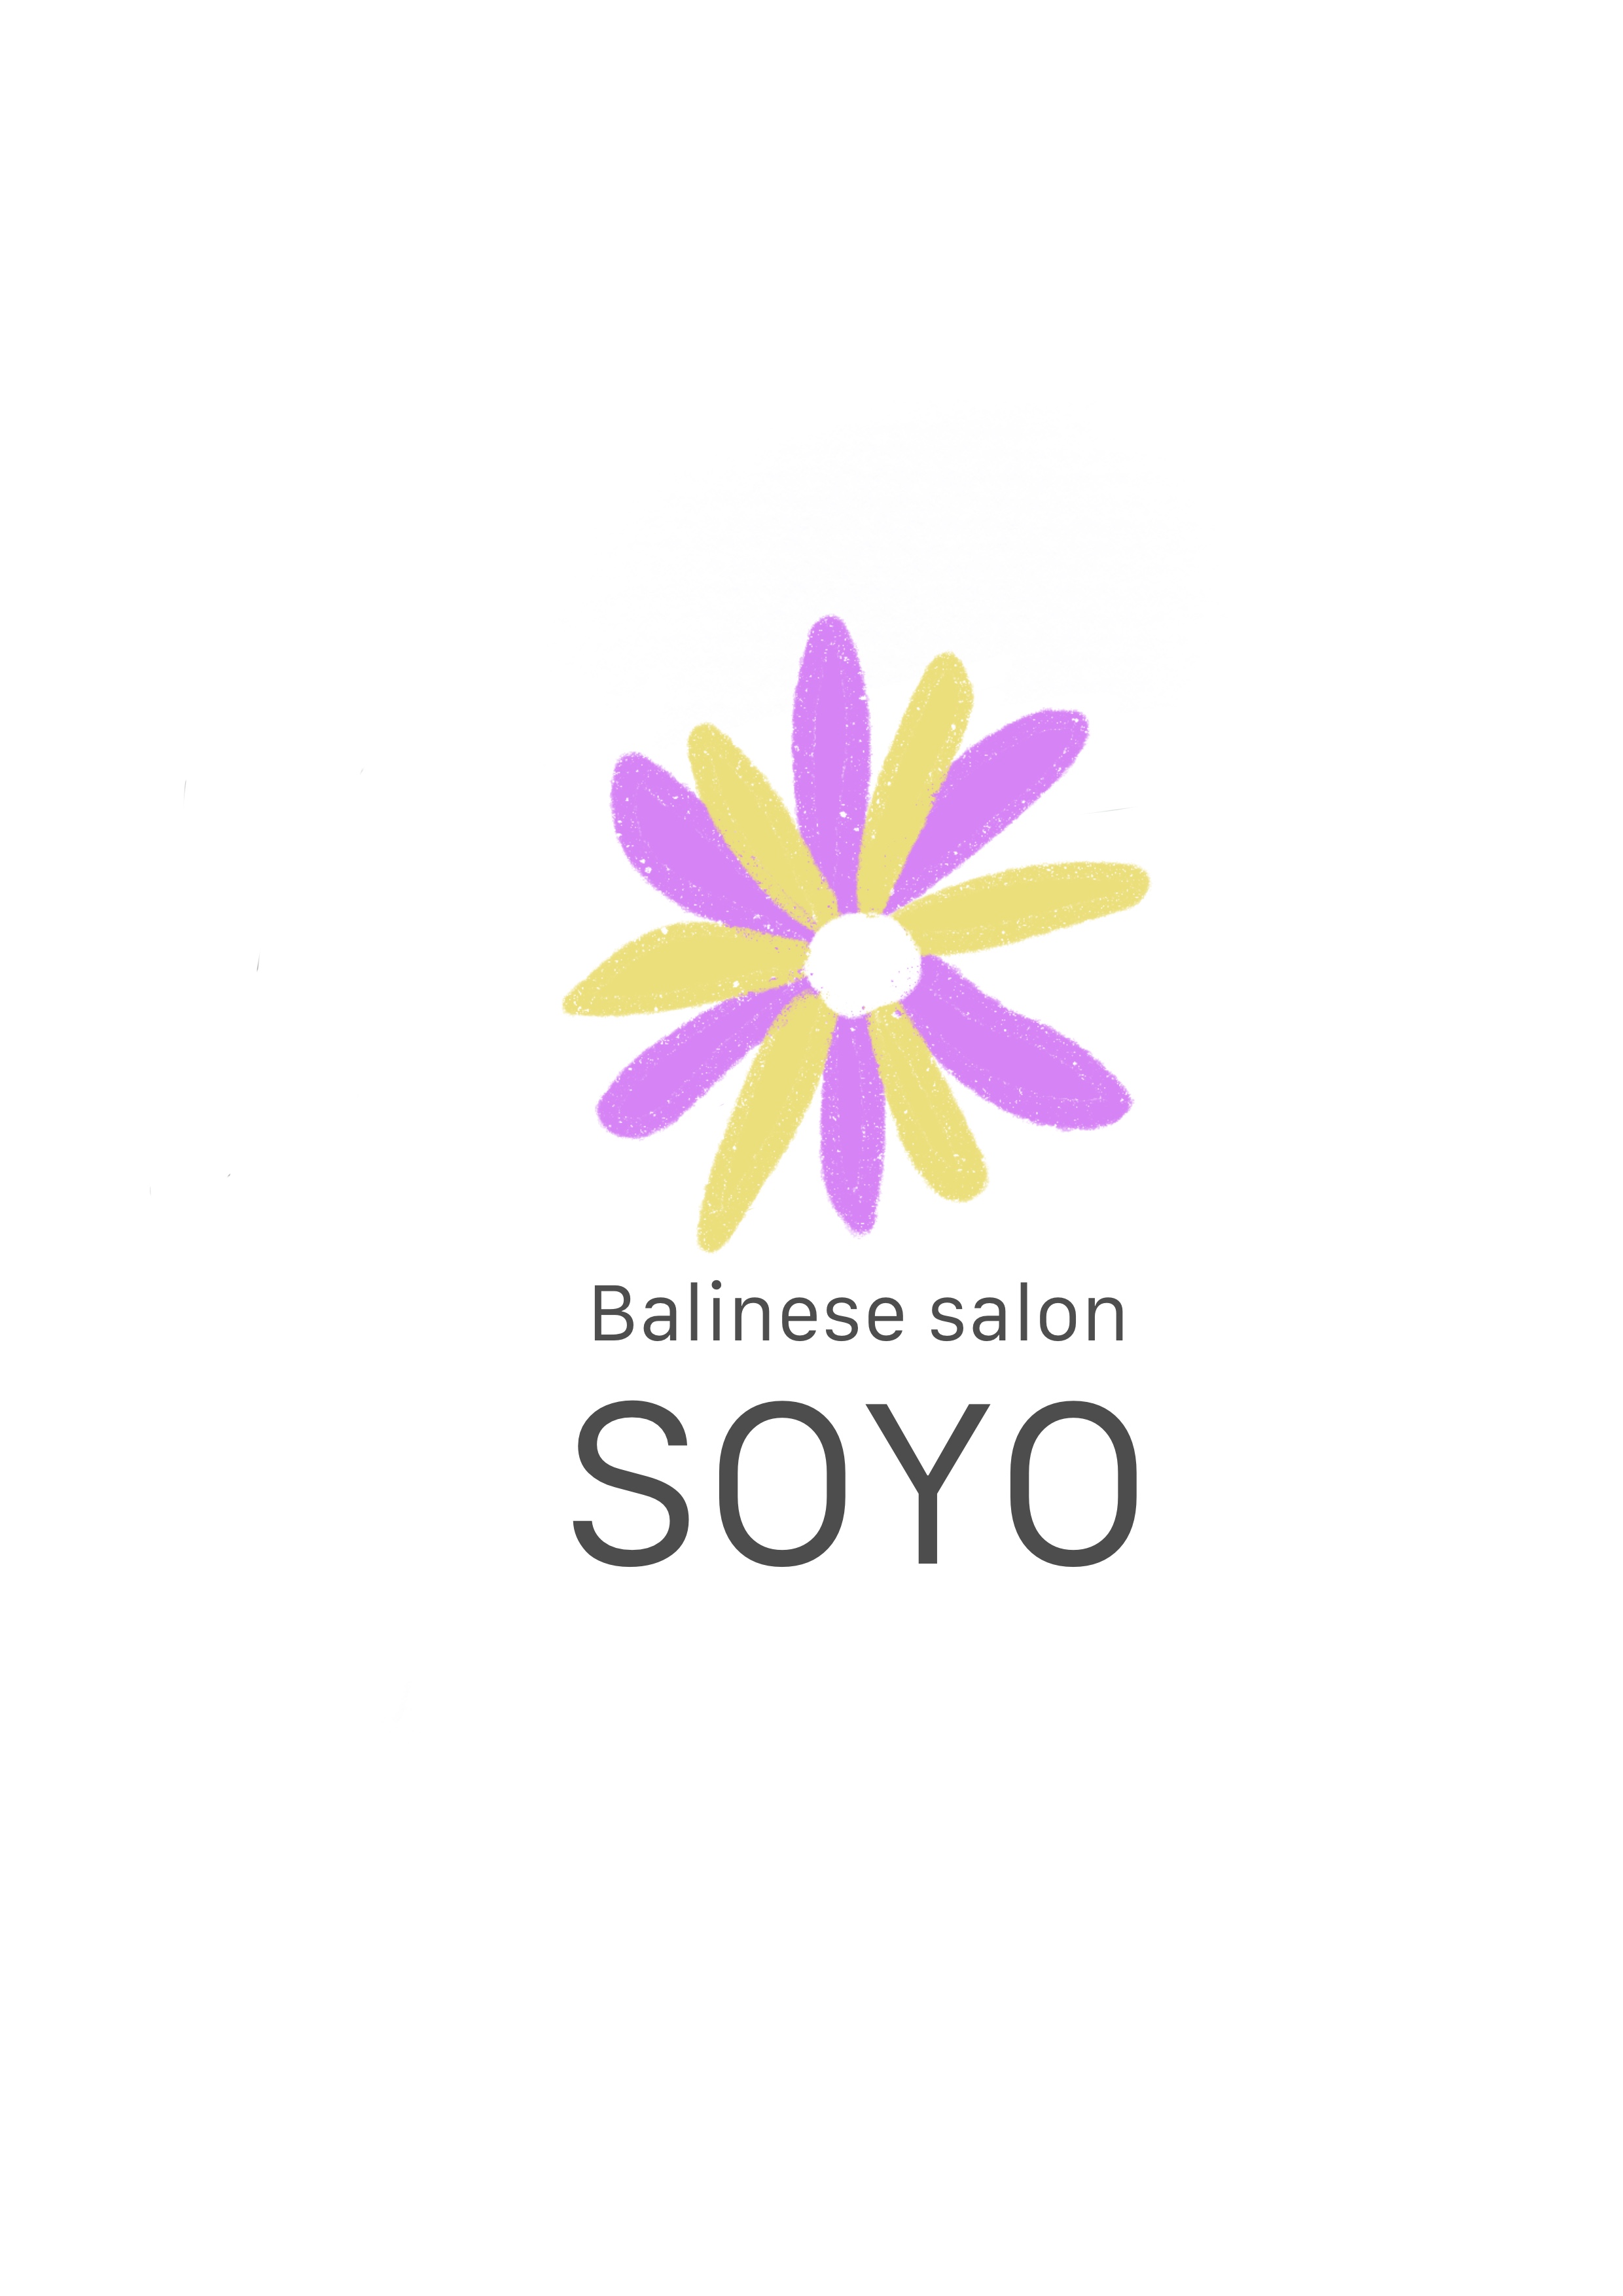 ブログ - Balinese salon SOYO